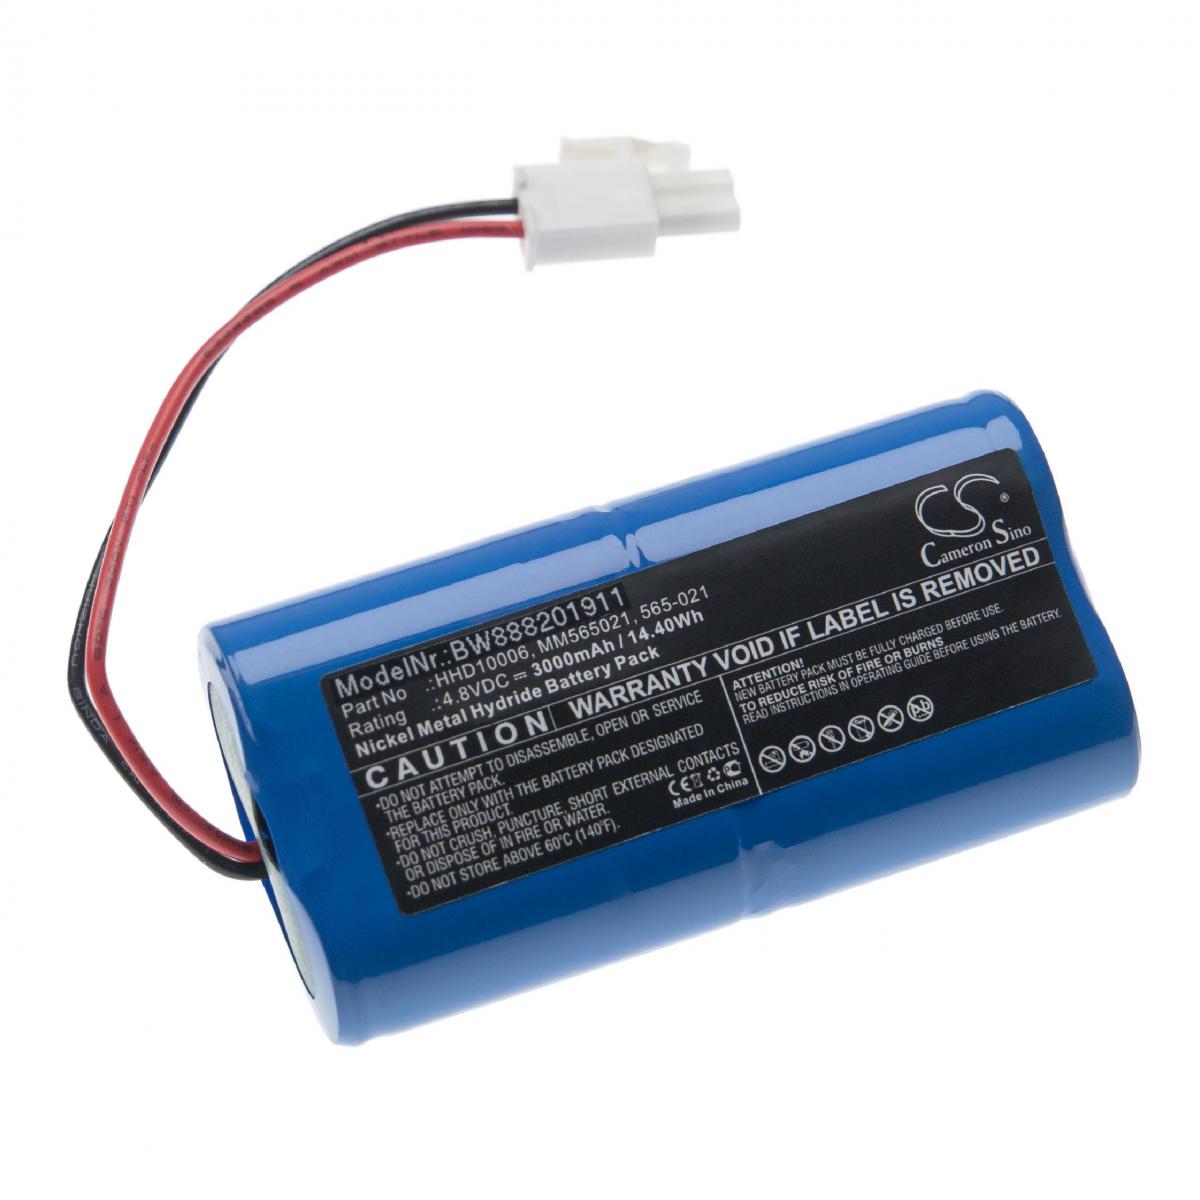 Vhbw - vhbw Batterie remplace Mosquito Magnet 565-021 REV A2, HHD10006, MM565021 pour piège à insectes, lampe anti-moustique (3000mAh, 4,8V, NiMH) - Autre appareil de mesure